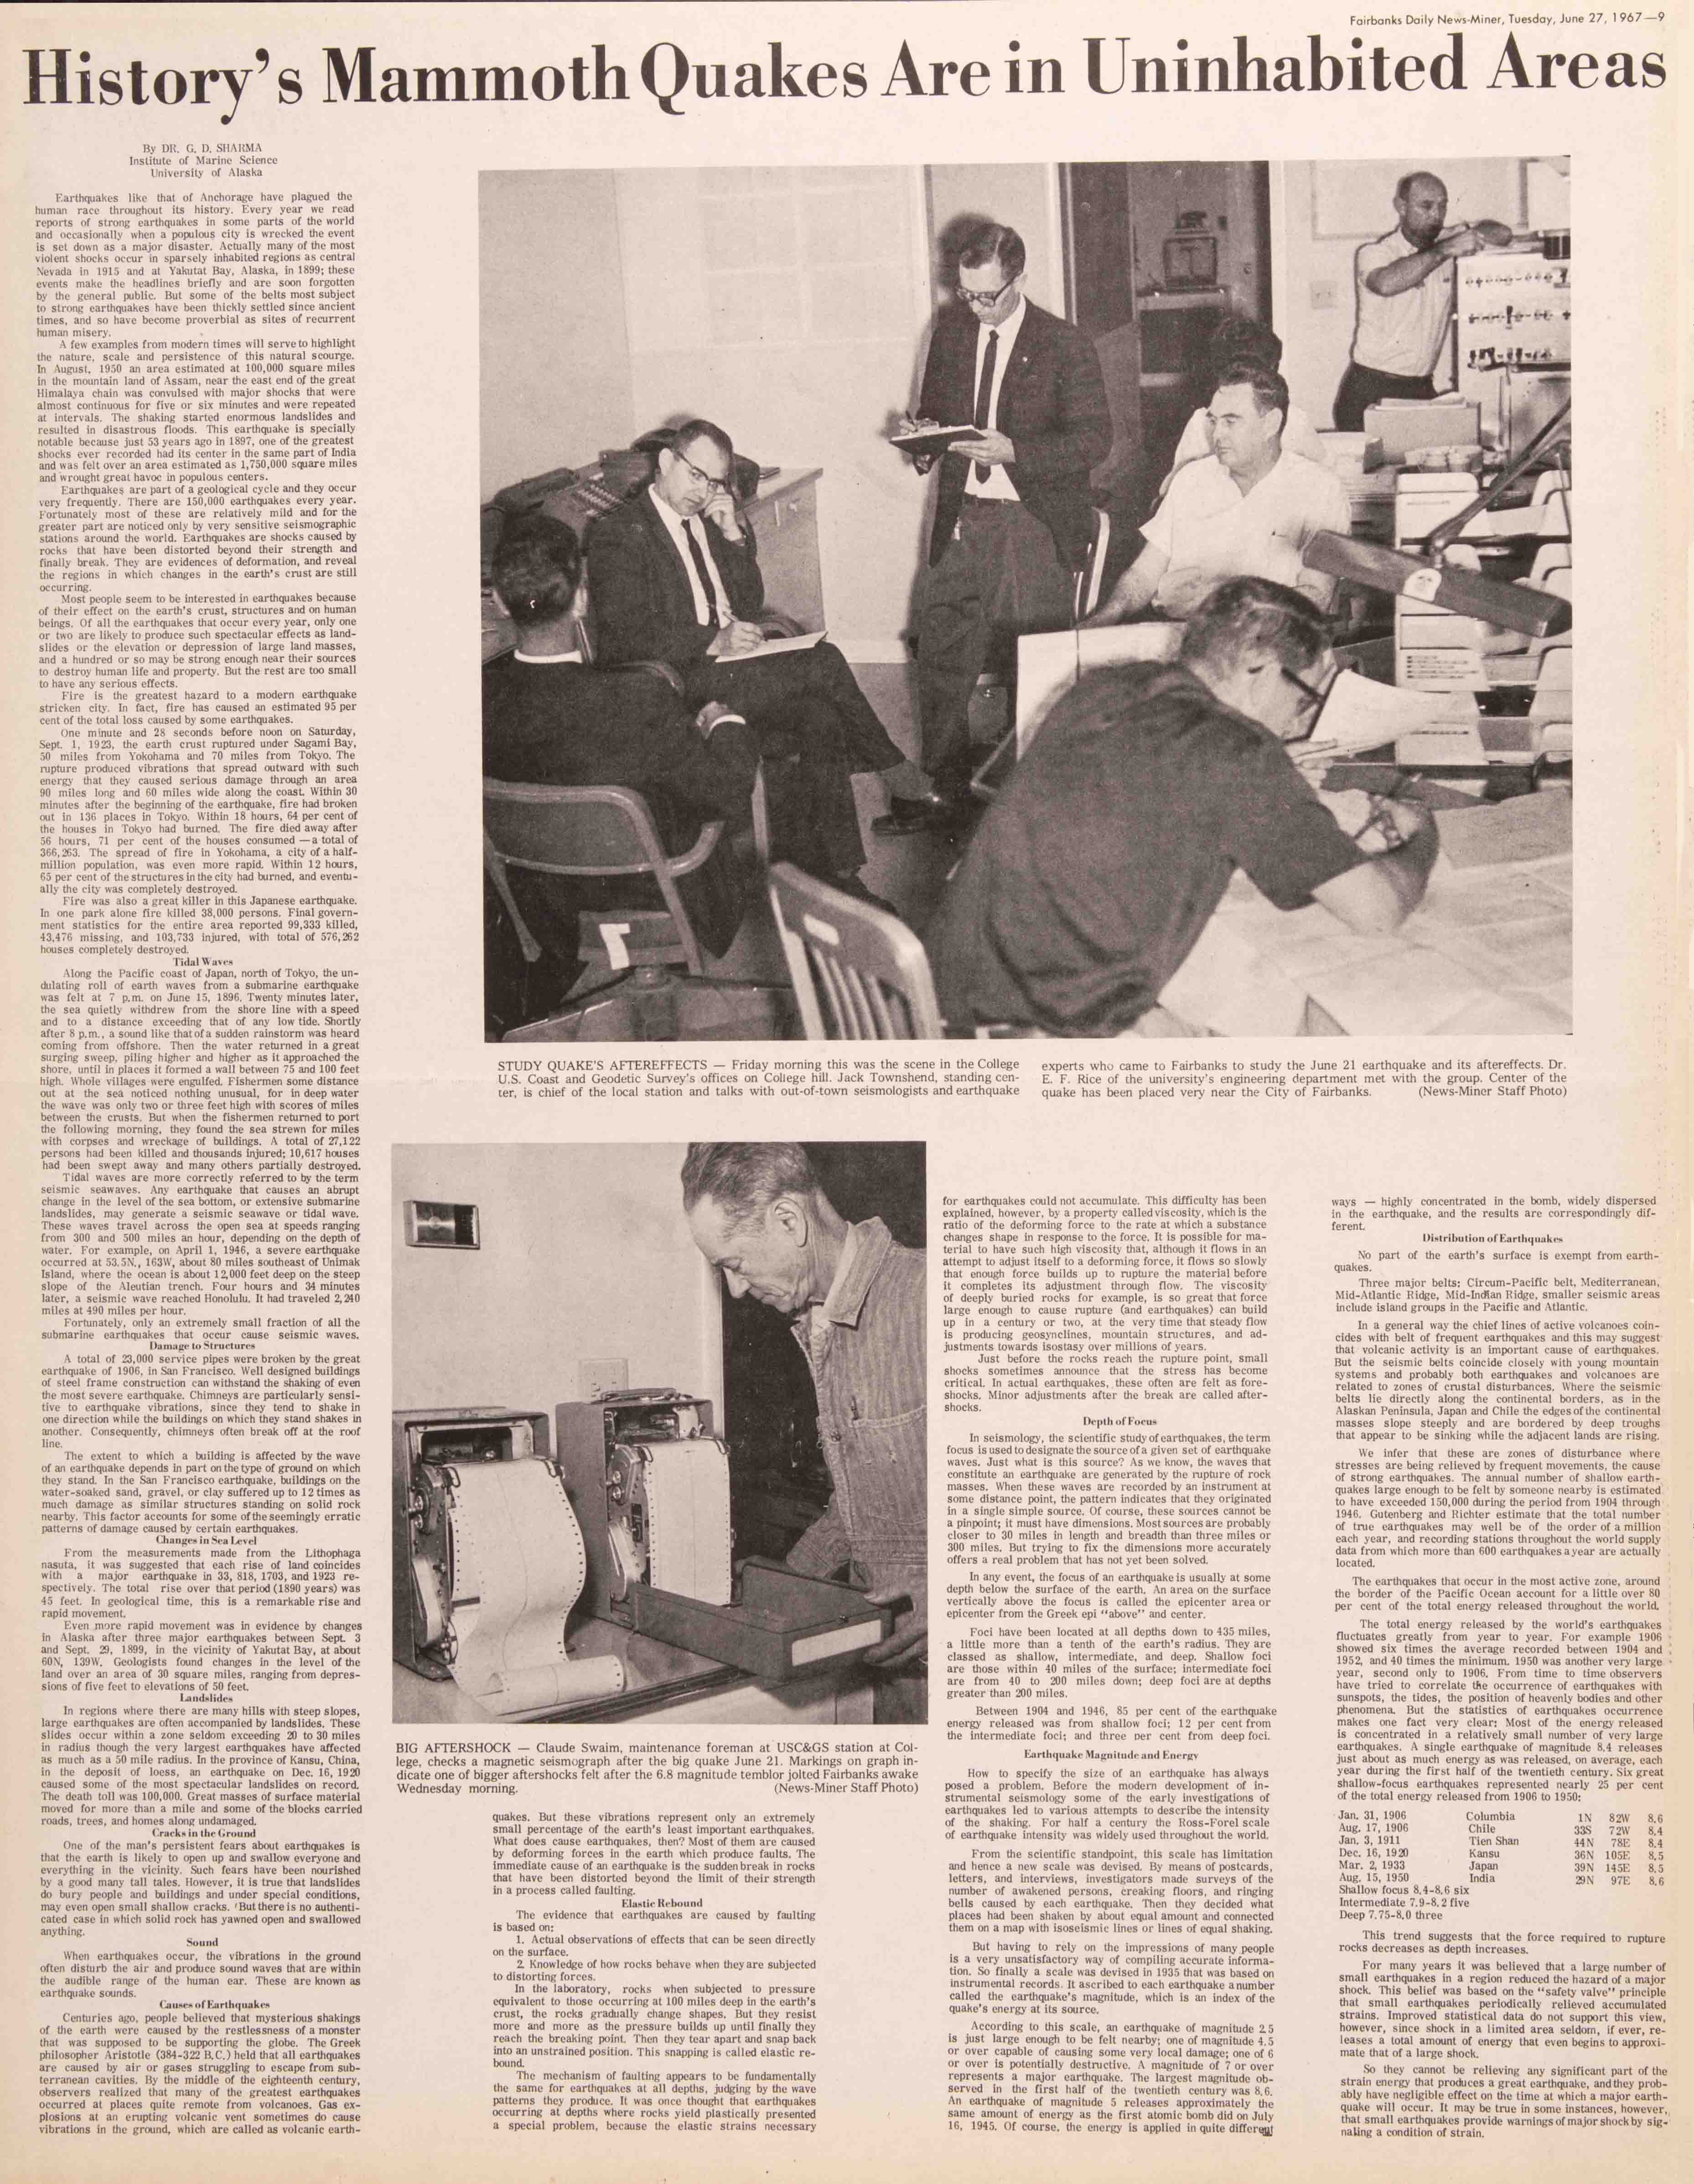 1967 June 27, Fairbanks Daily News-Miner (pg 9)